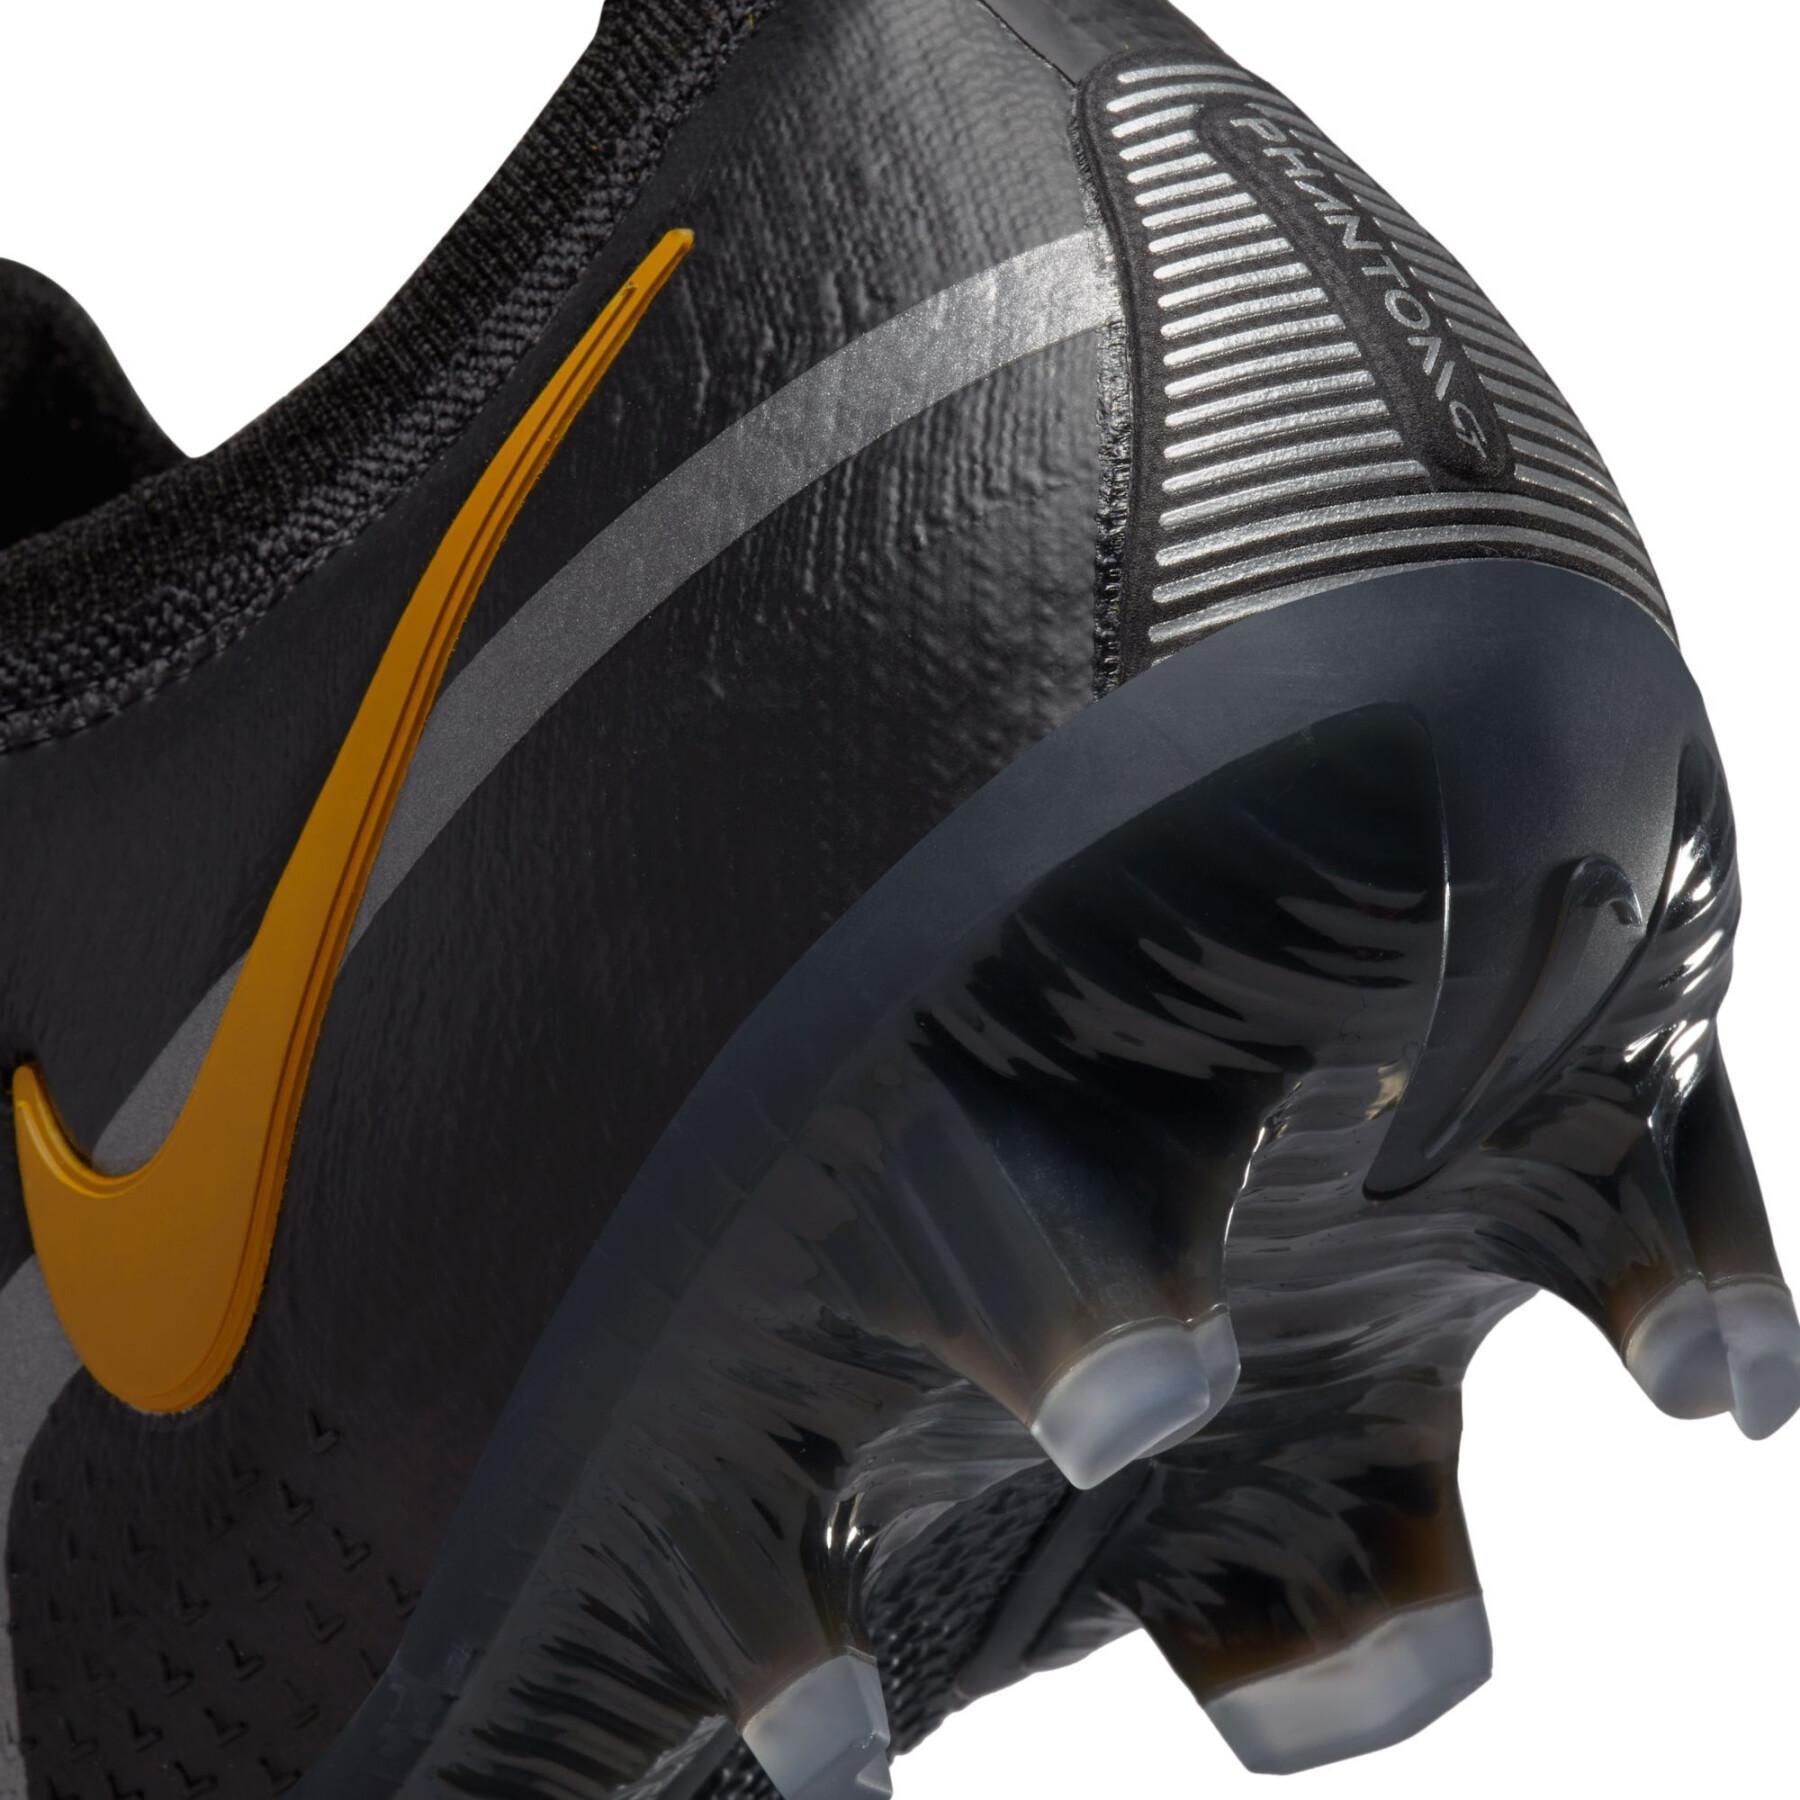 Chaussures de football Nike Phantom GT2 Élite FG